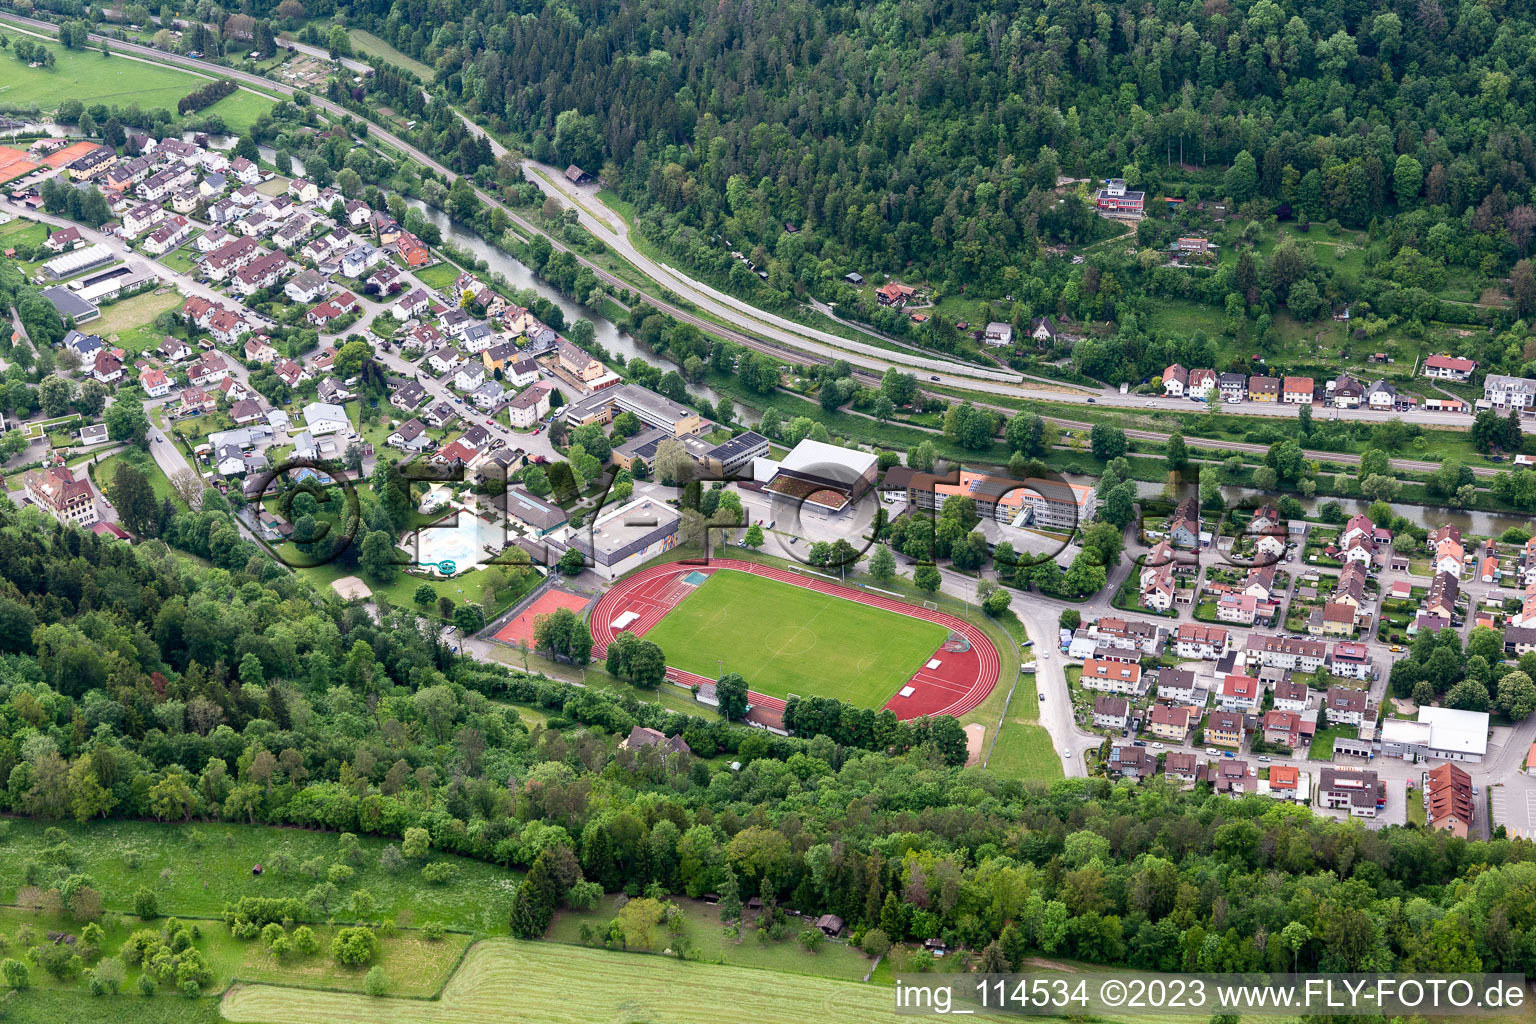 Vue aérienne de Stade Albeck et piscine de loisirs Sololei à Sulz am Neckar dans le département Bade-Wurtemberg, Allemagne